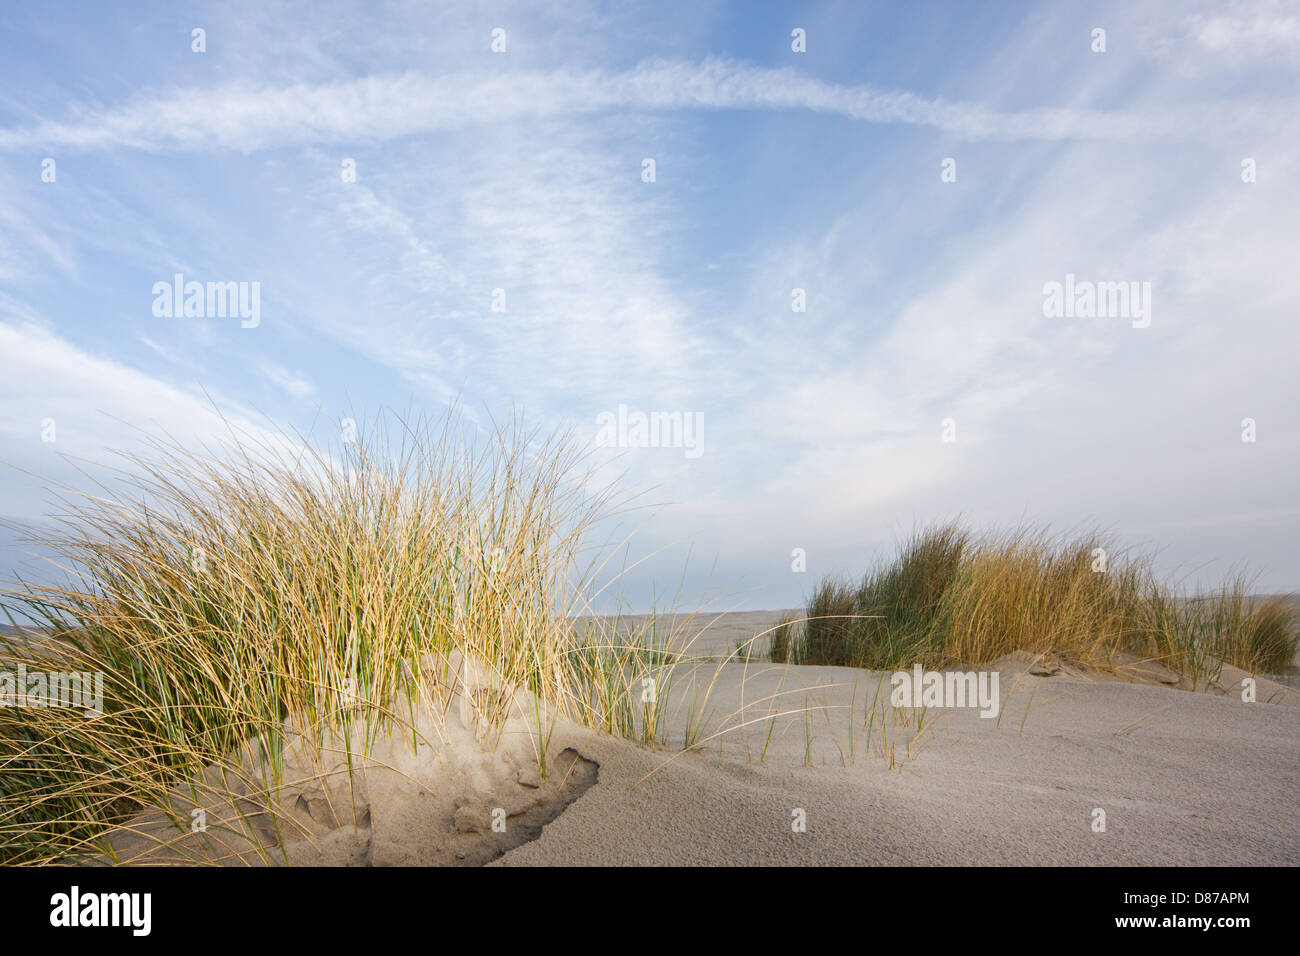 Strandhafer oder Marramgrass in den Dünen unter blauem Himmel mit Cirruswolken Stockfoto